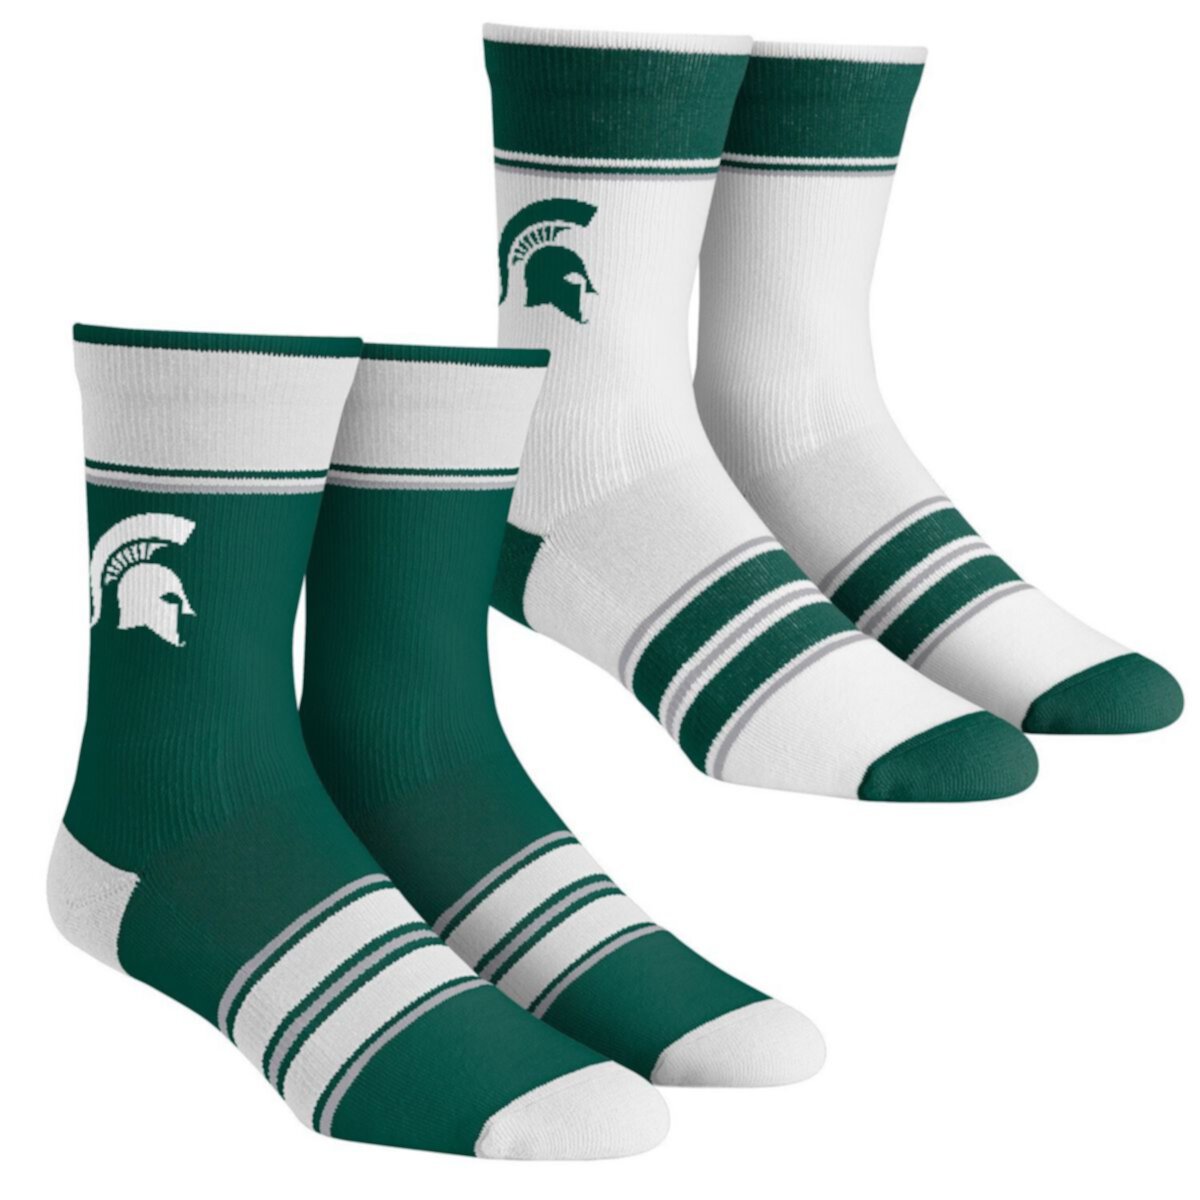 Молодежные носки Rock Em Socks Michigan State Spartans, набор из 2 пар носков для команды с несколькими полосками Unbranded